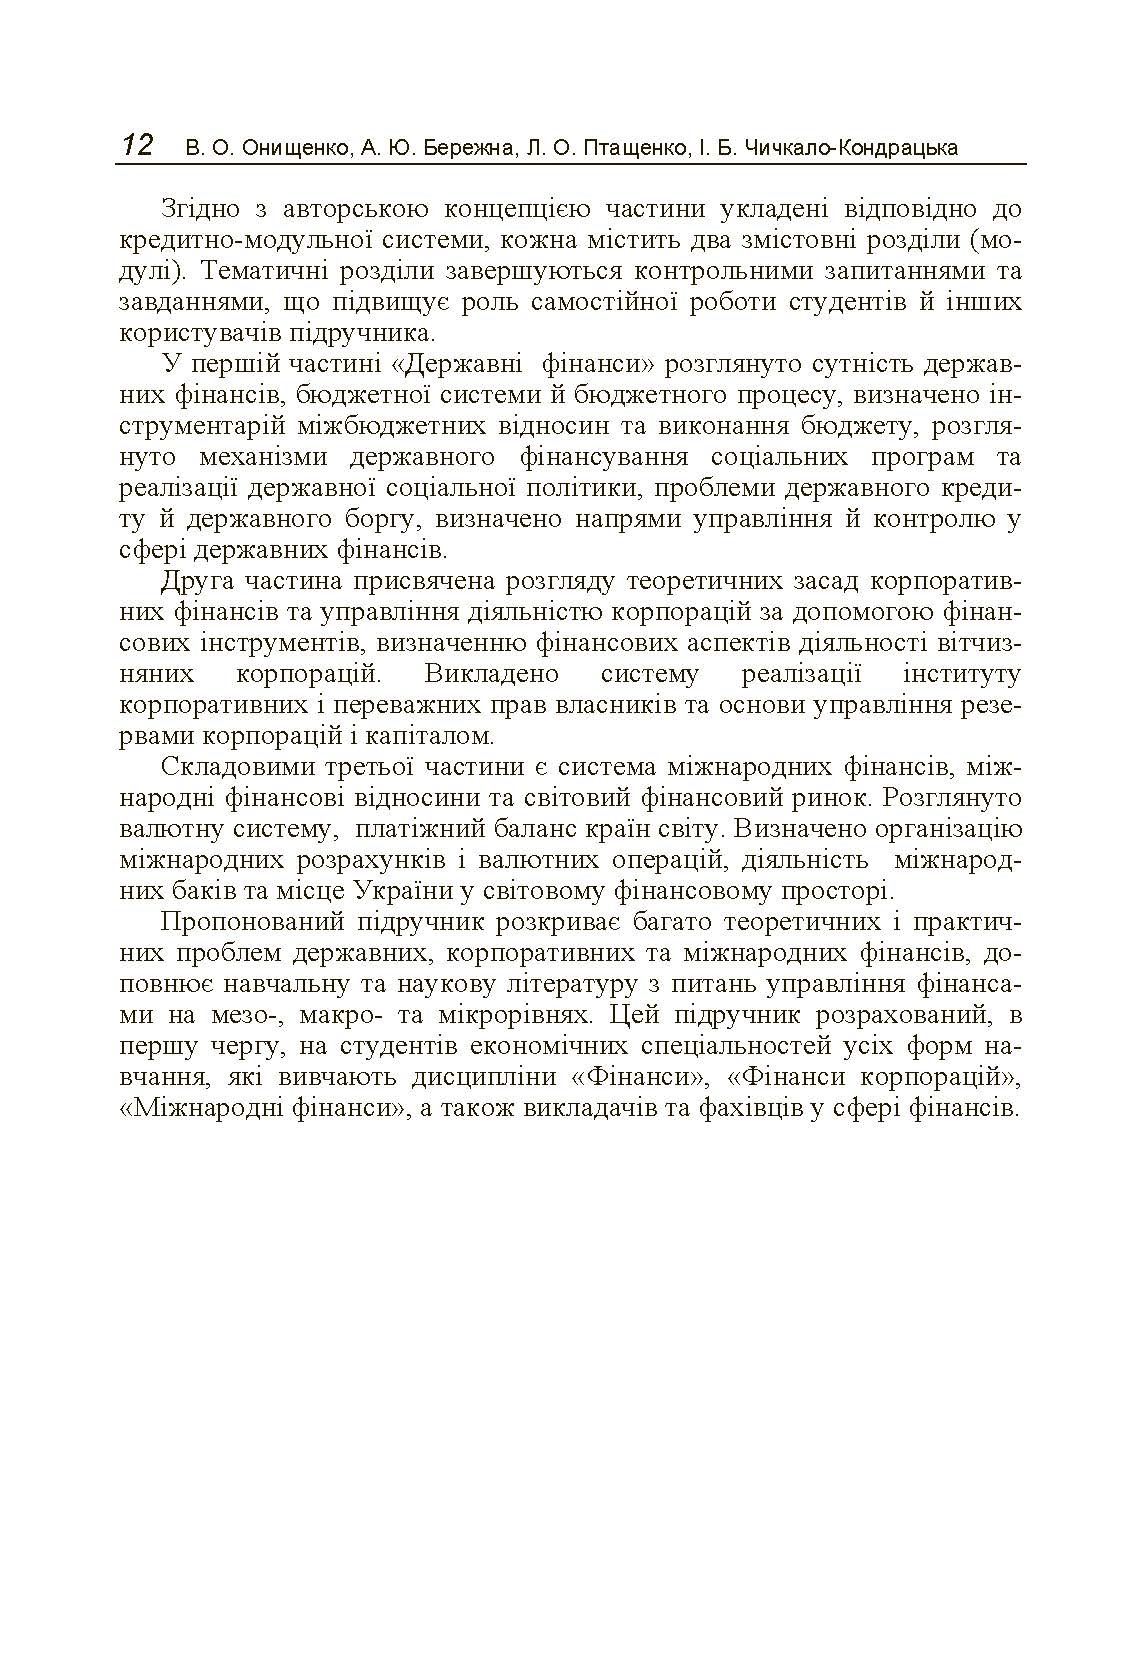 Фінанси (державні, корпоративні, міжнародні) (2019 год)). Автор — Онищенко В.О.. 